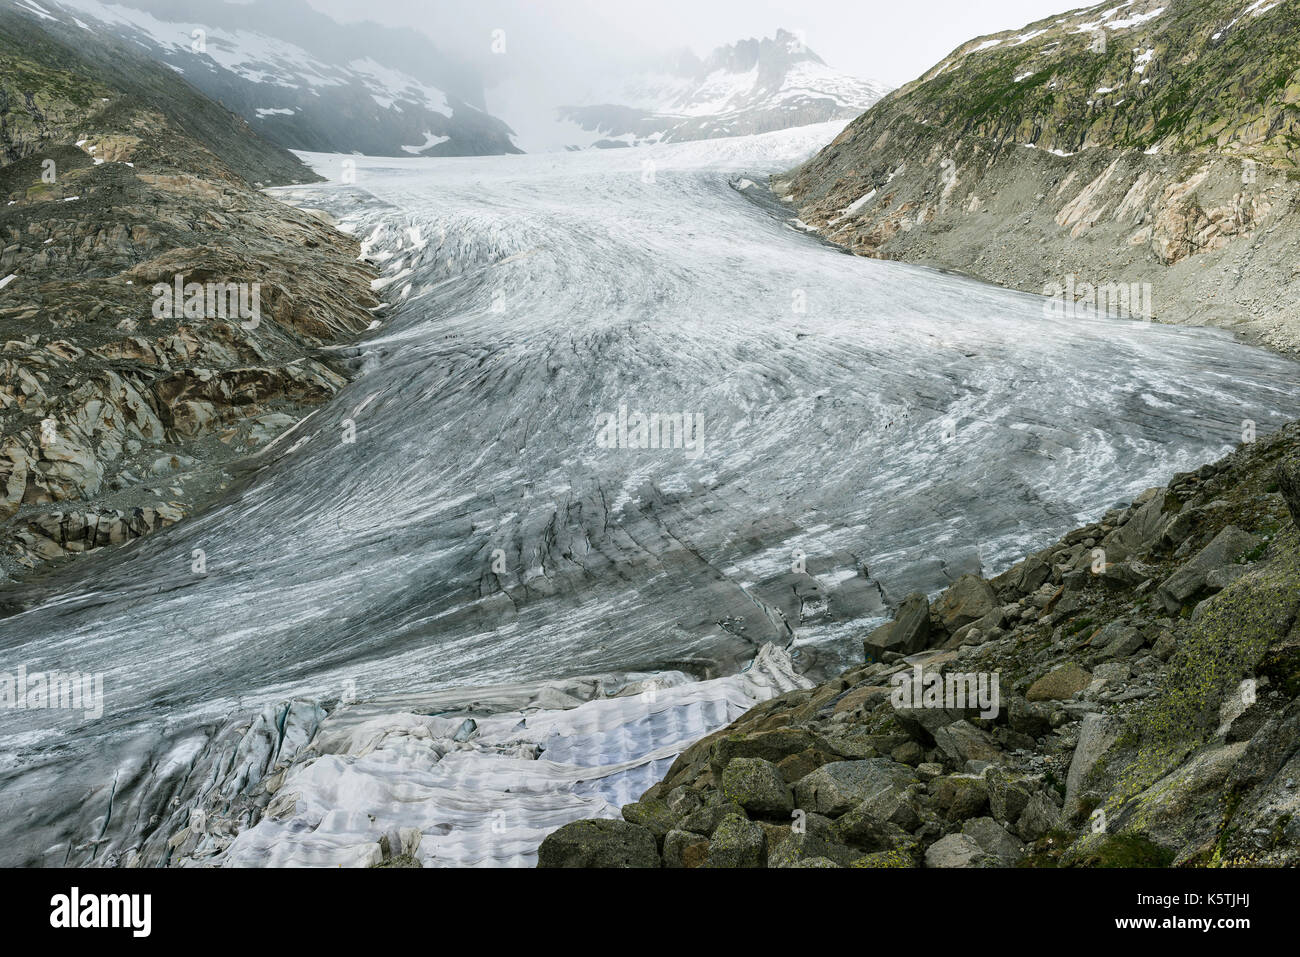 Ghiacciaio del Rodano in nuvole, a fondo panni bianchi contro la fusione del ghiacciaio grotta, obergoms vs, Vallese, Svizzera Foto Stock